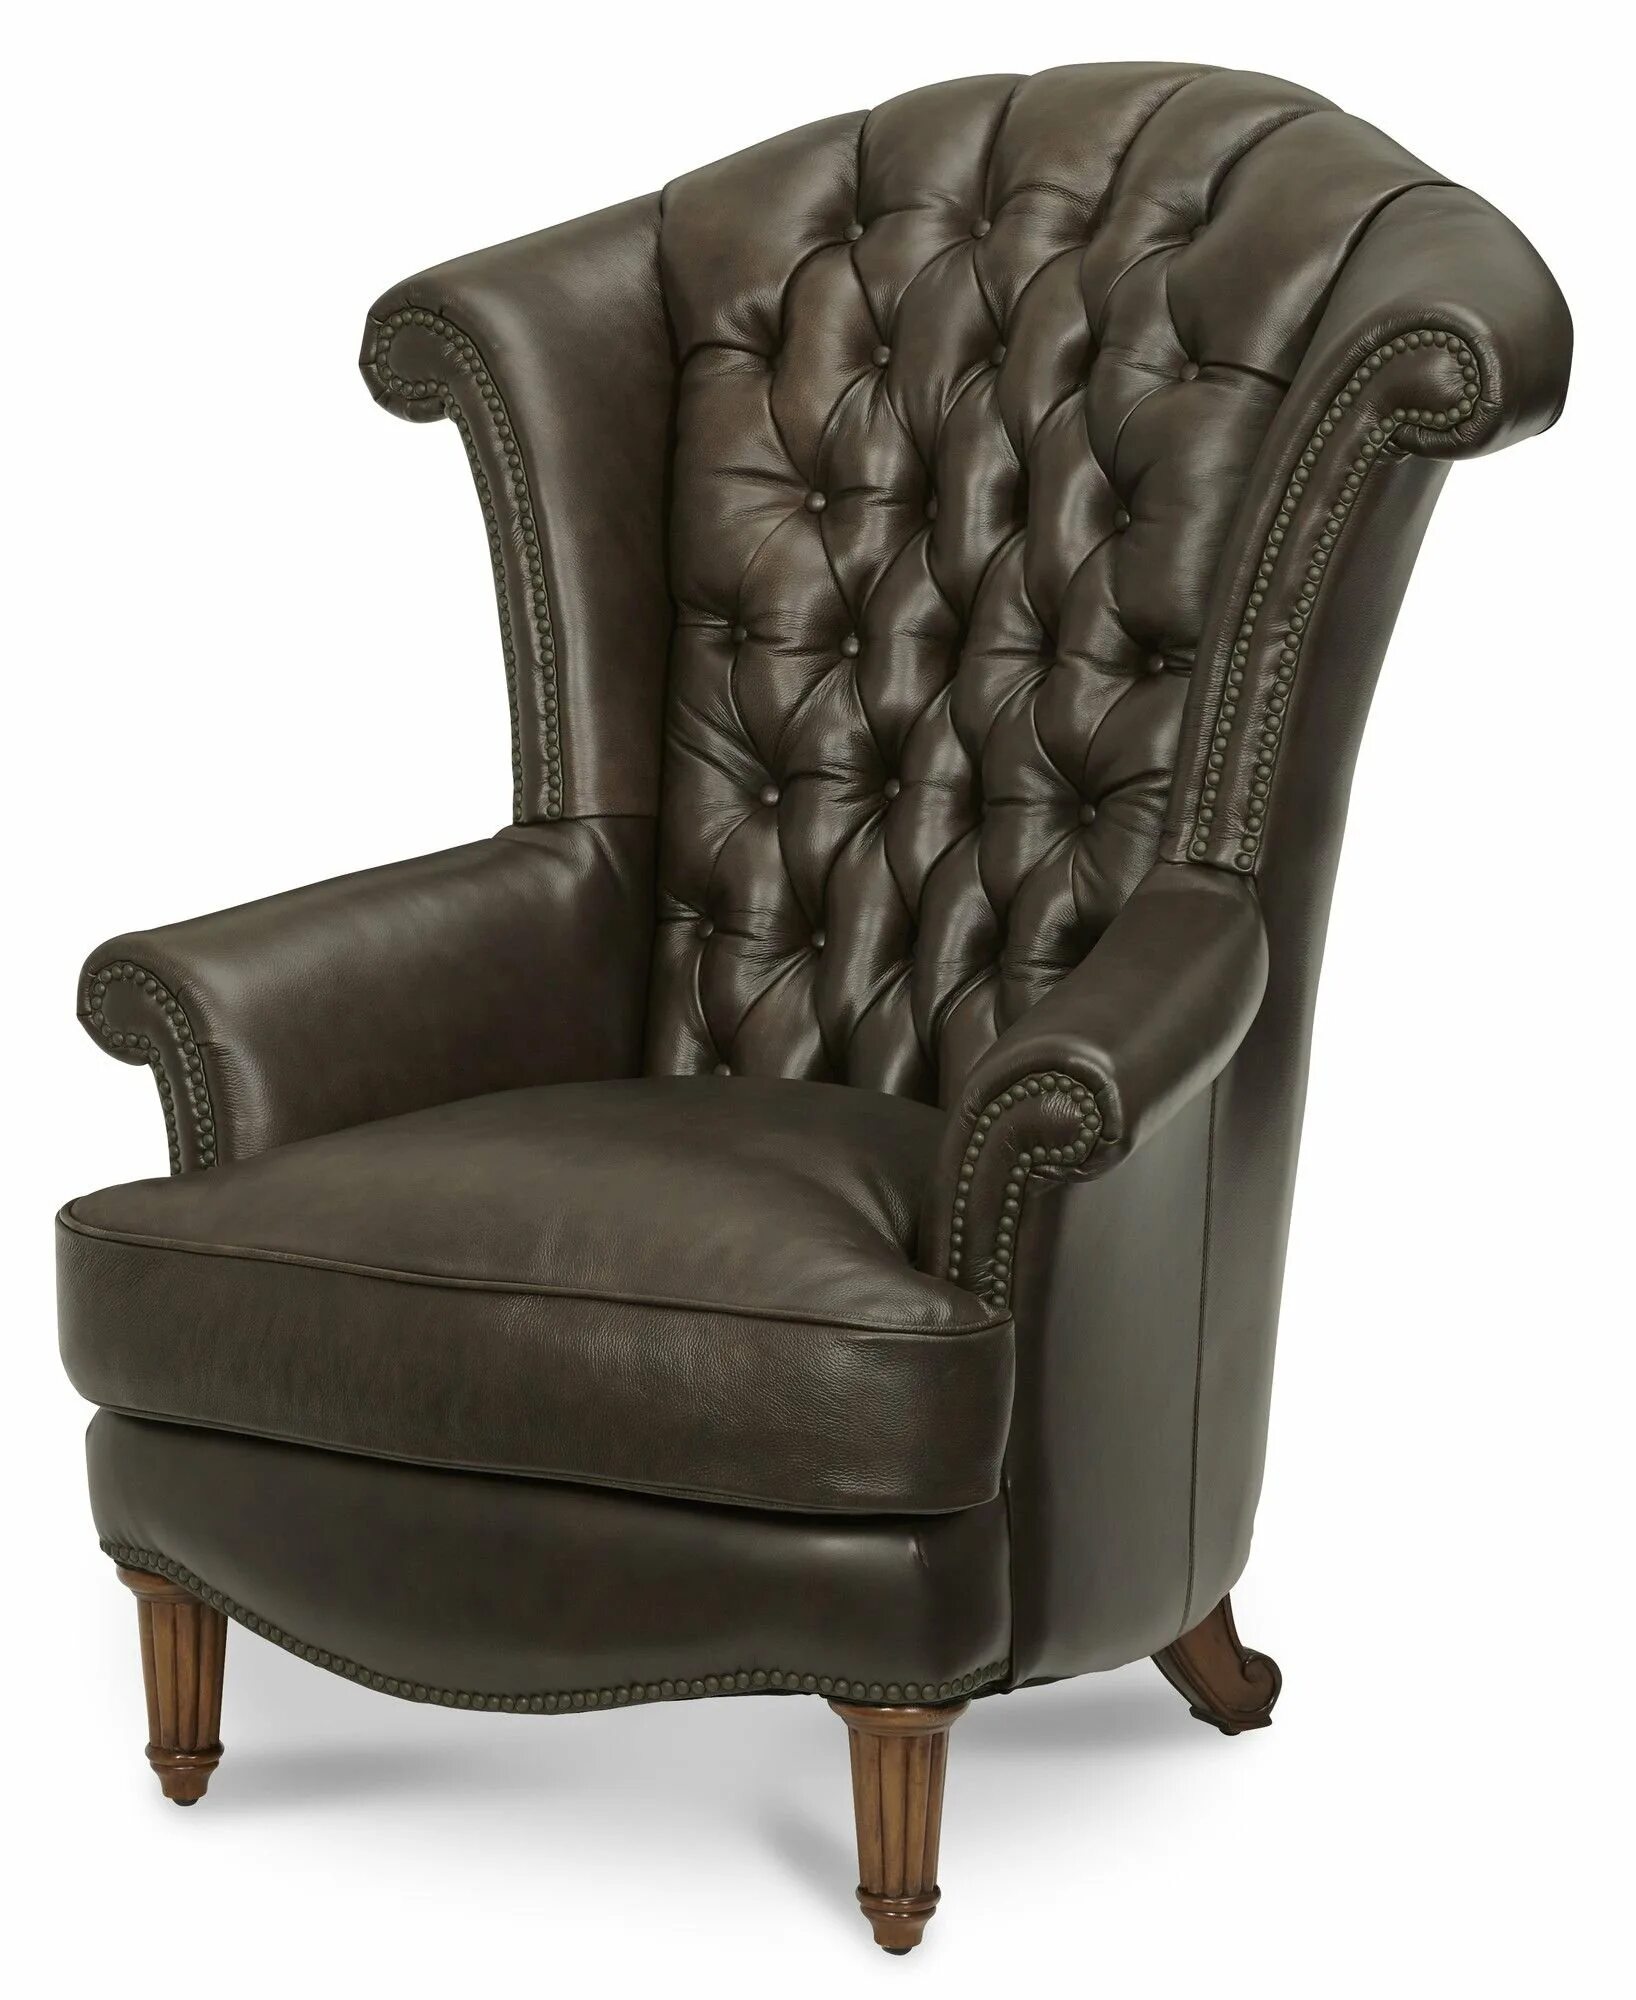 Высокое кожаное кресло. Кресло Savoy Leather Chair. Кожаное кресло с высокой спинкой. Стул кресло с высокой спинкой. Кресло мягкое с высокой спинкой.